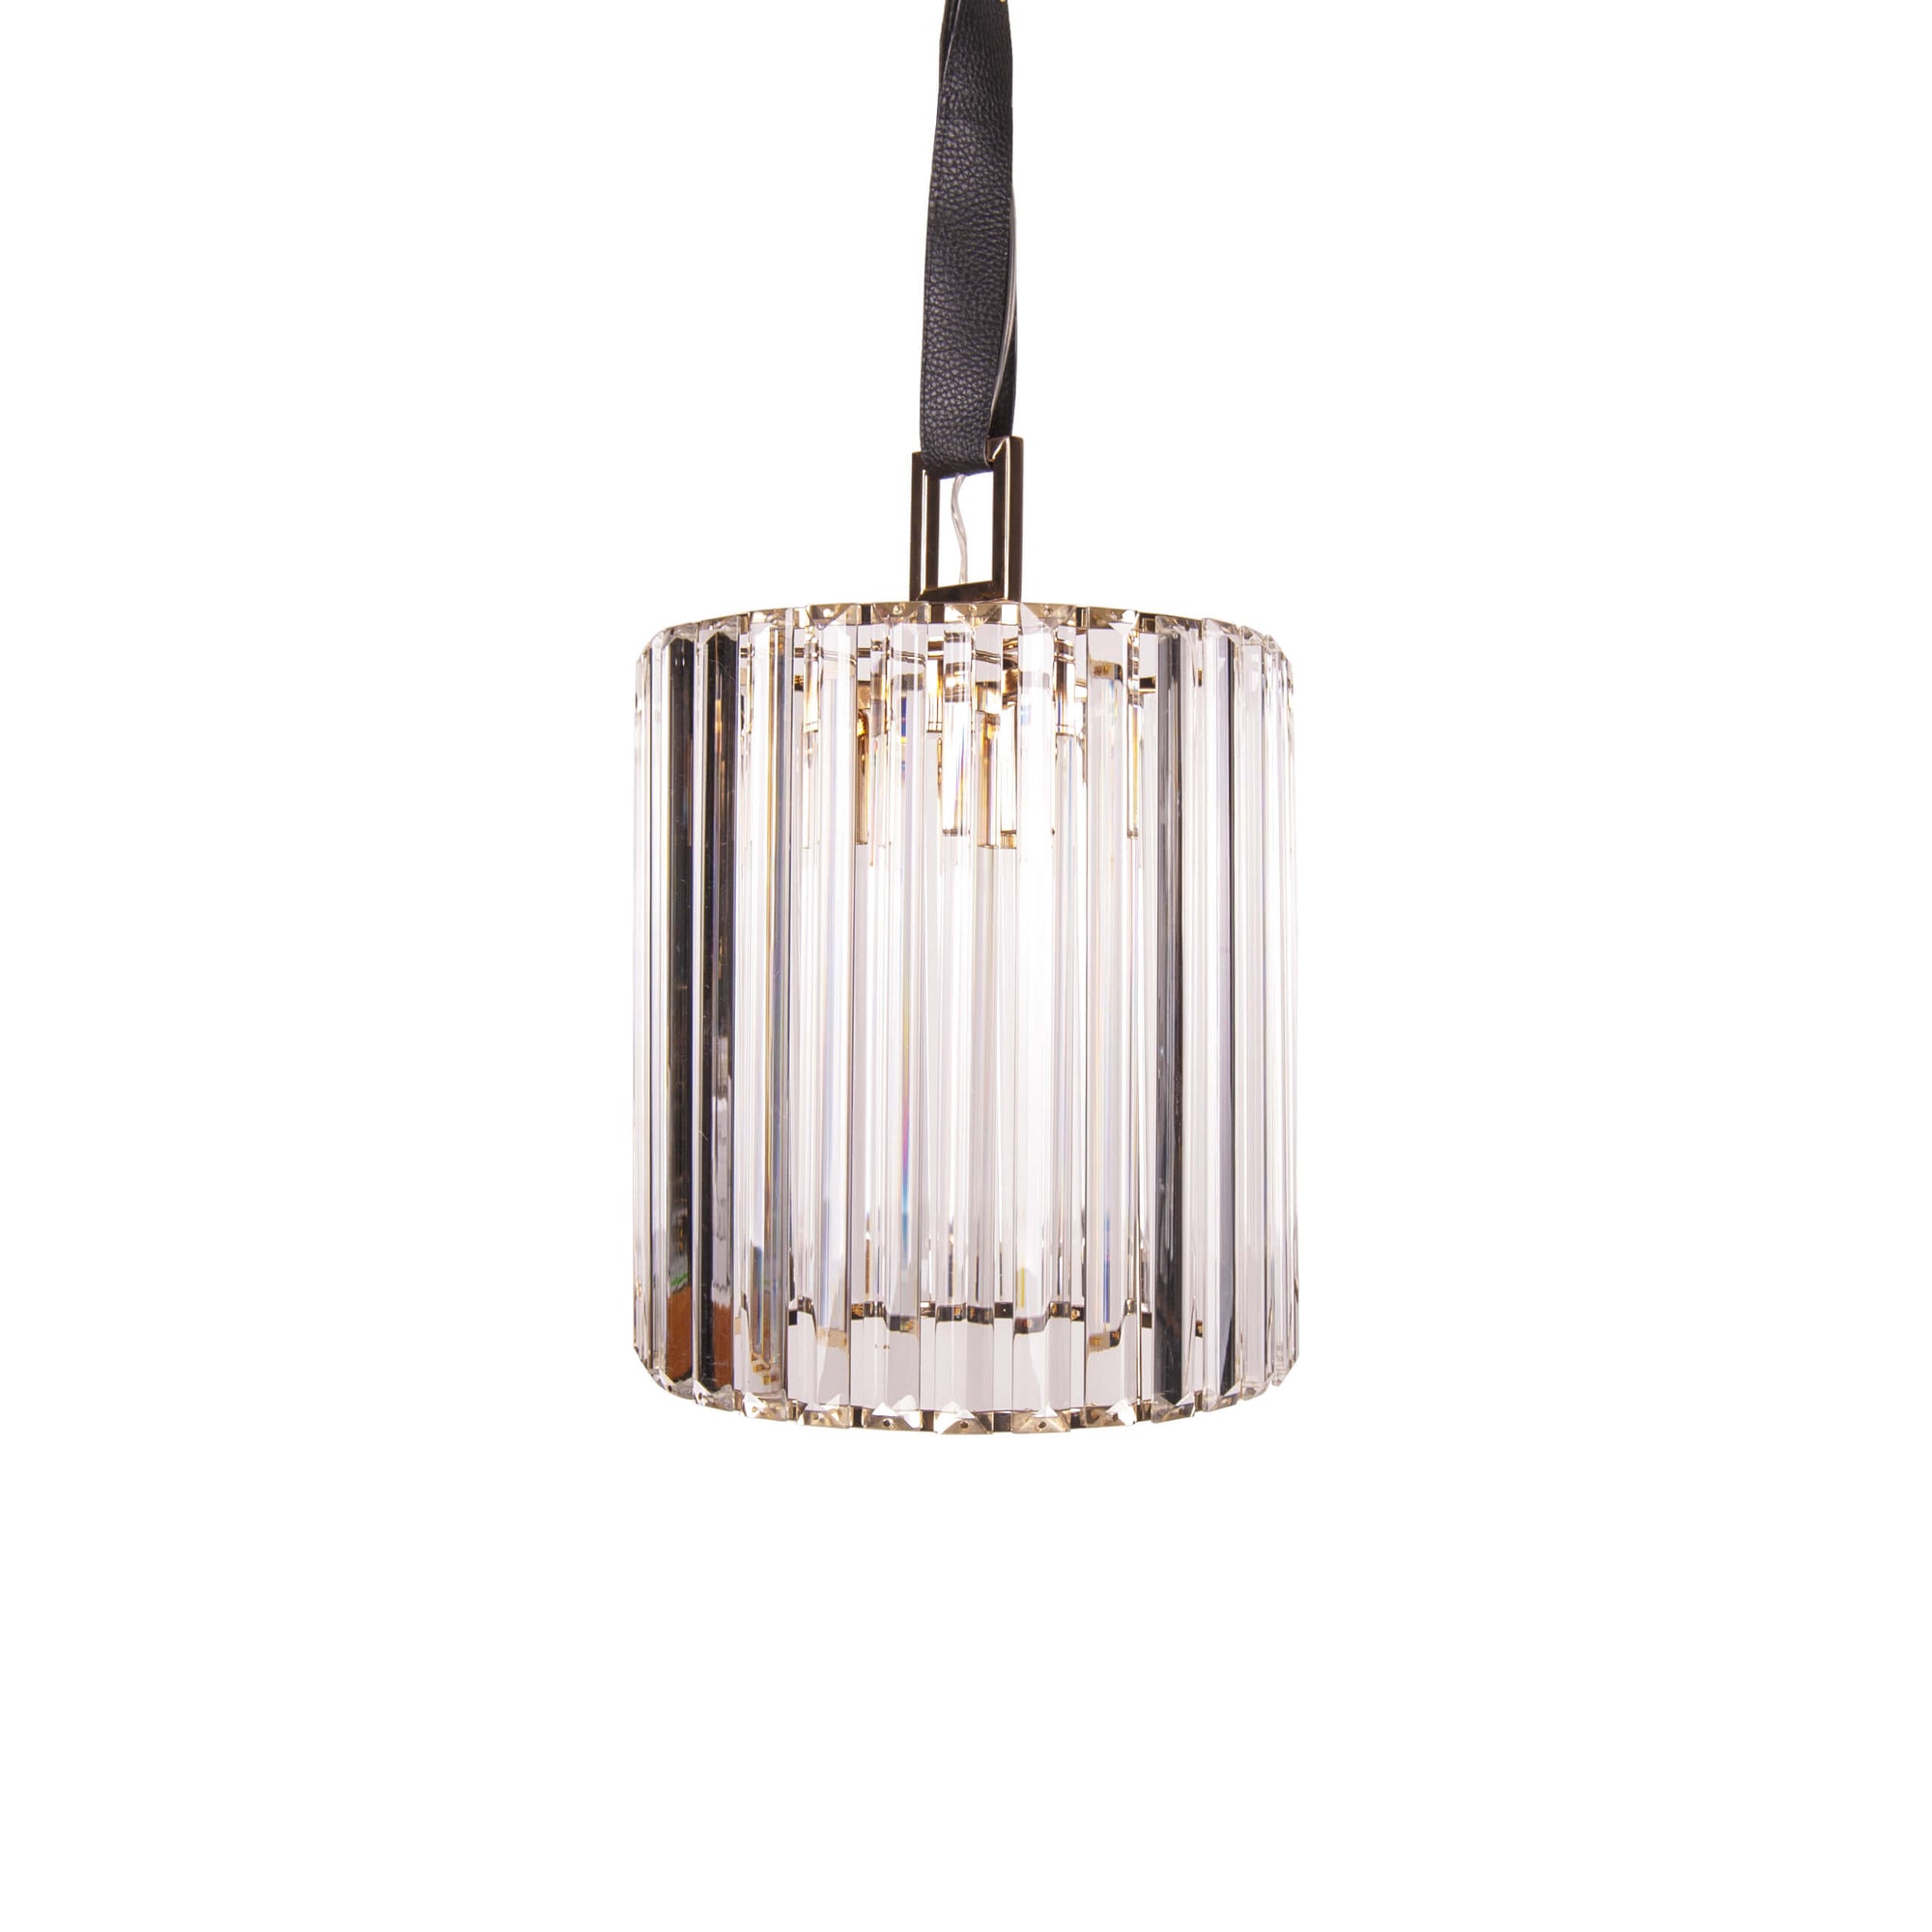 Pendul transparent Margaux S1 din sticla - Corp de iluminat design modern din colectia de lampi suspendate si lustre DOMICILIO